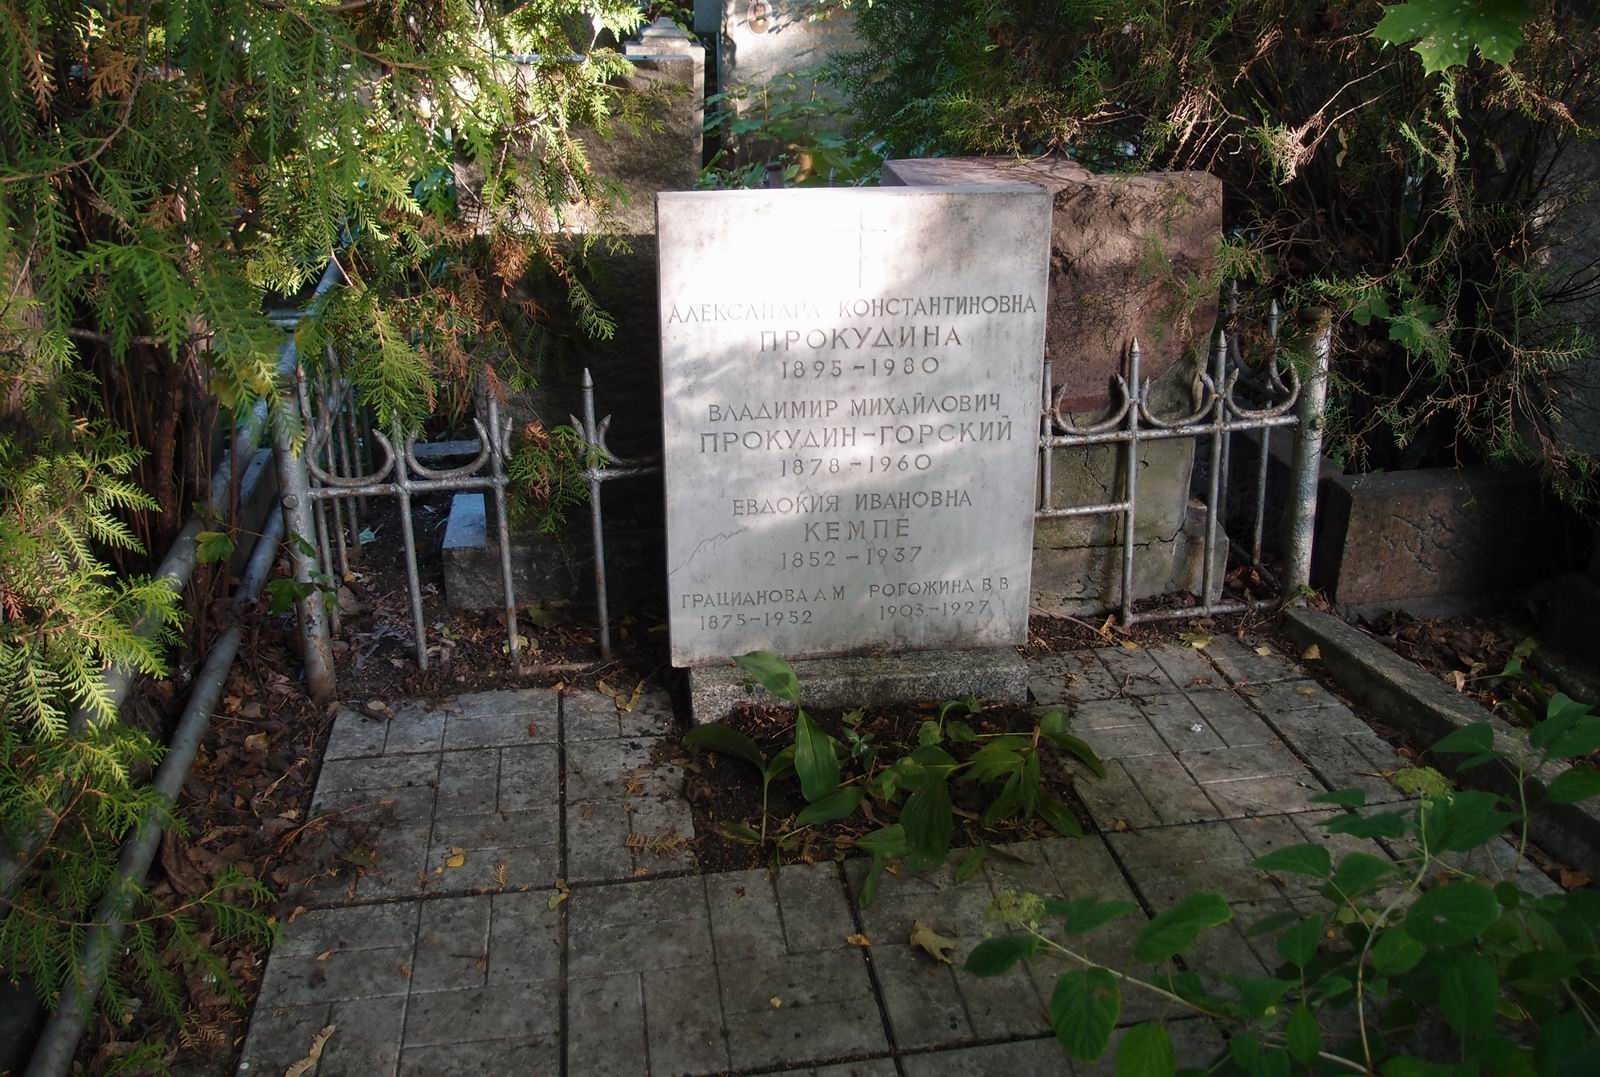 Памятник на могиле Рогожиной В.В. (1903-1927), на Новодевичьем кладбище (3-36-13).